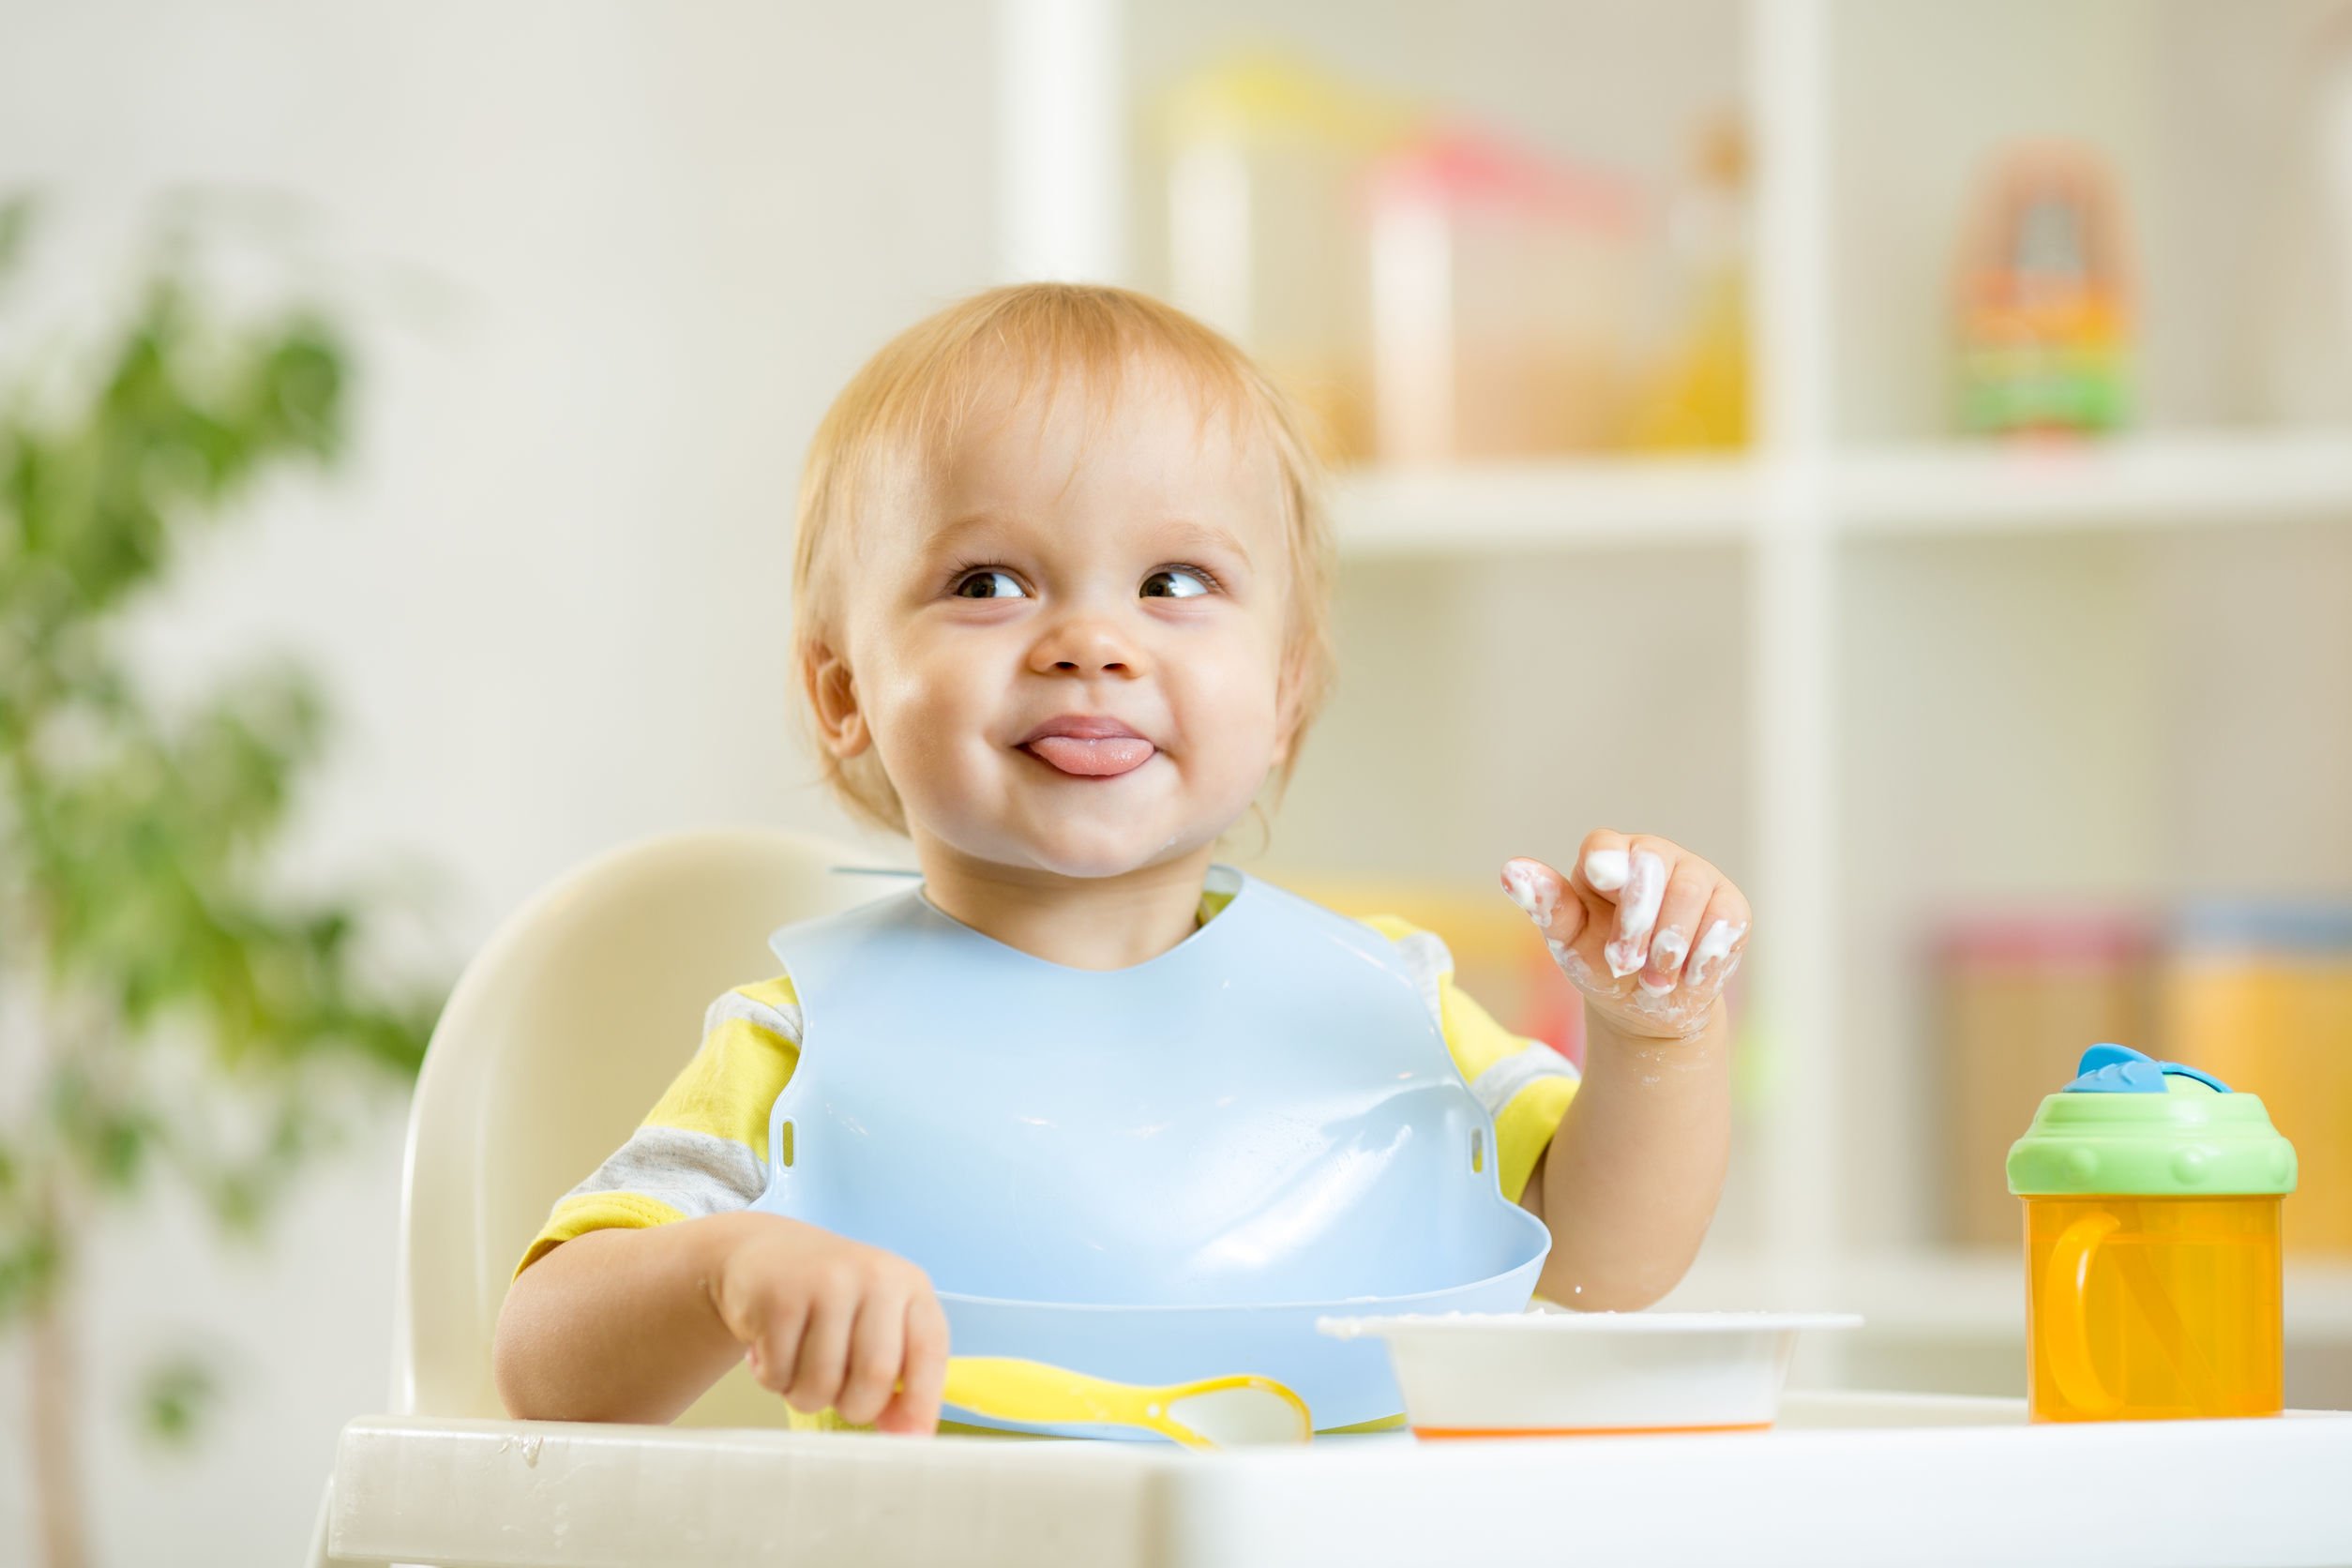 Kinderstoel voor aan eettafel kopen; vanaf wanneer kan je baby hier in?